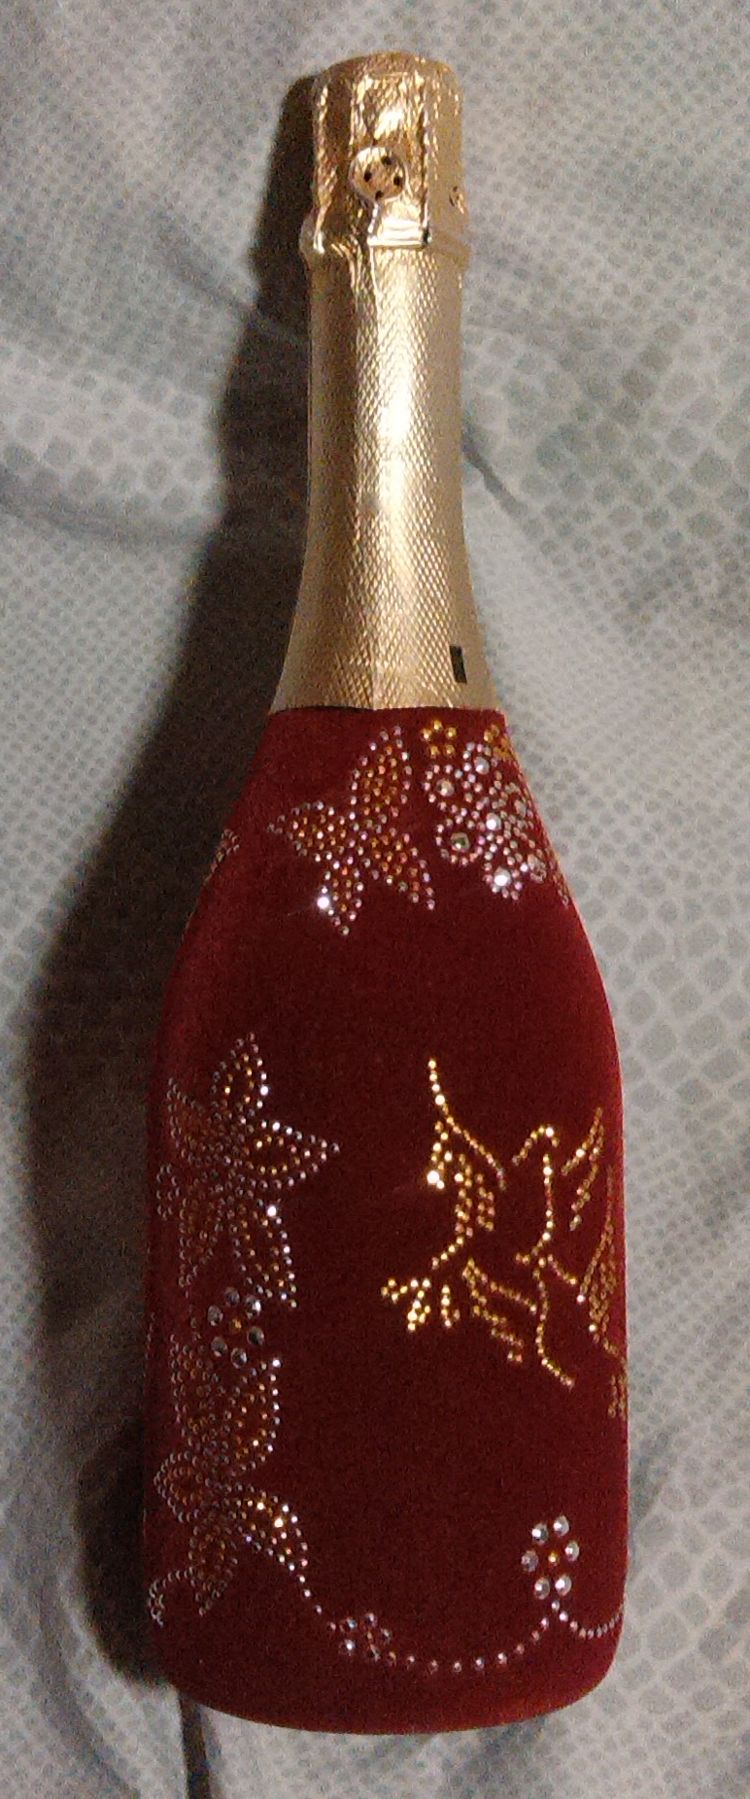 Бутылка шампанского флокированная со стразами ко Дню свадьбы.